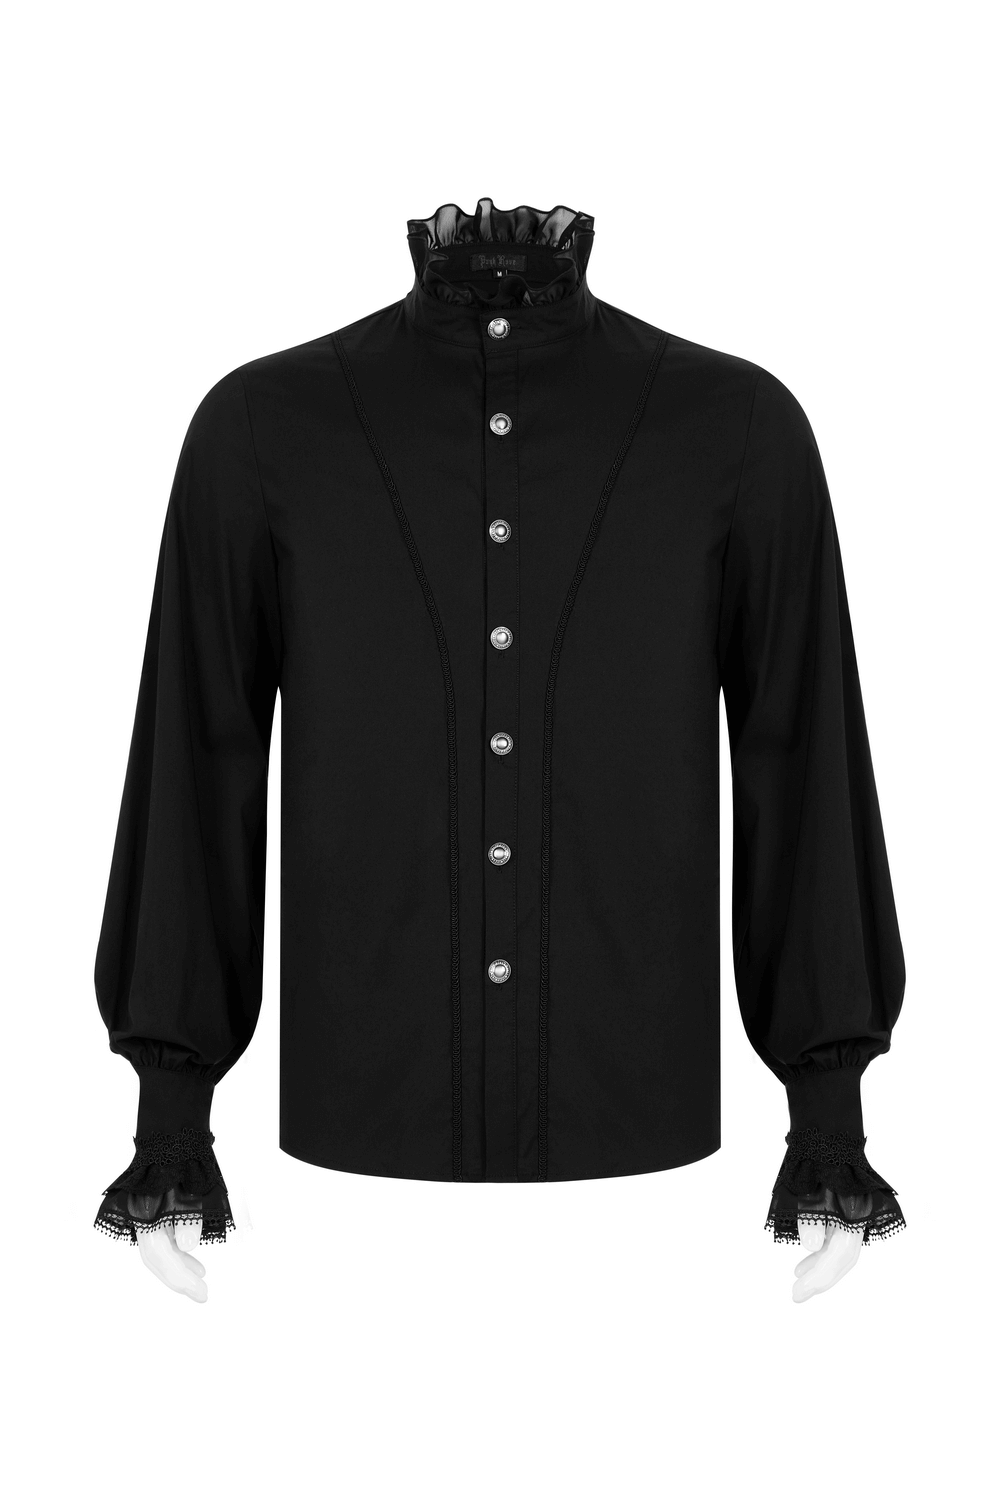 Victorian Lace Cuff Black Goth Shirt - HARD'N'HEAVY